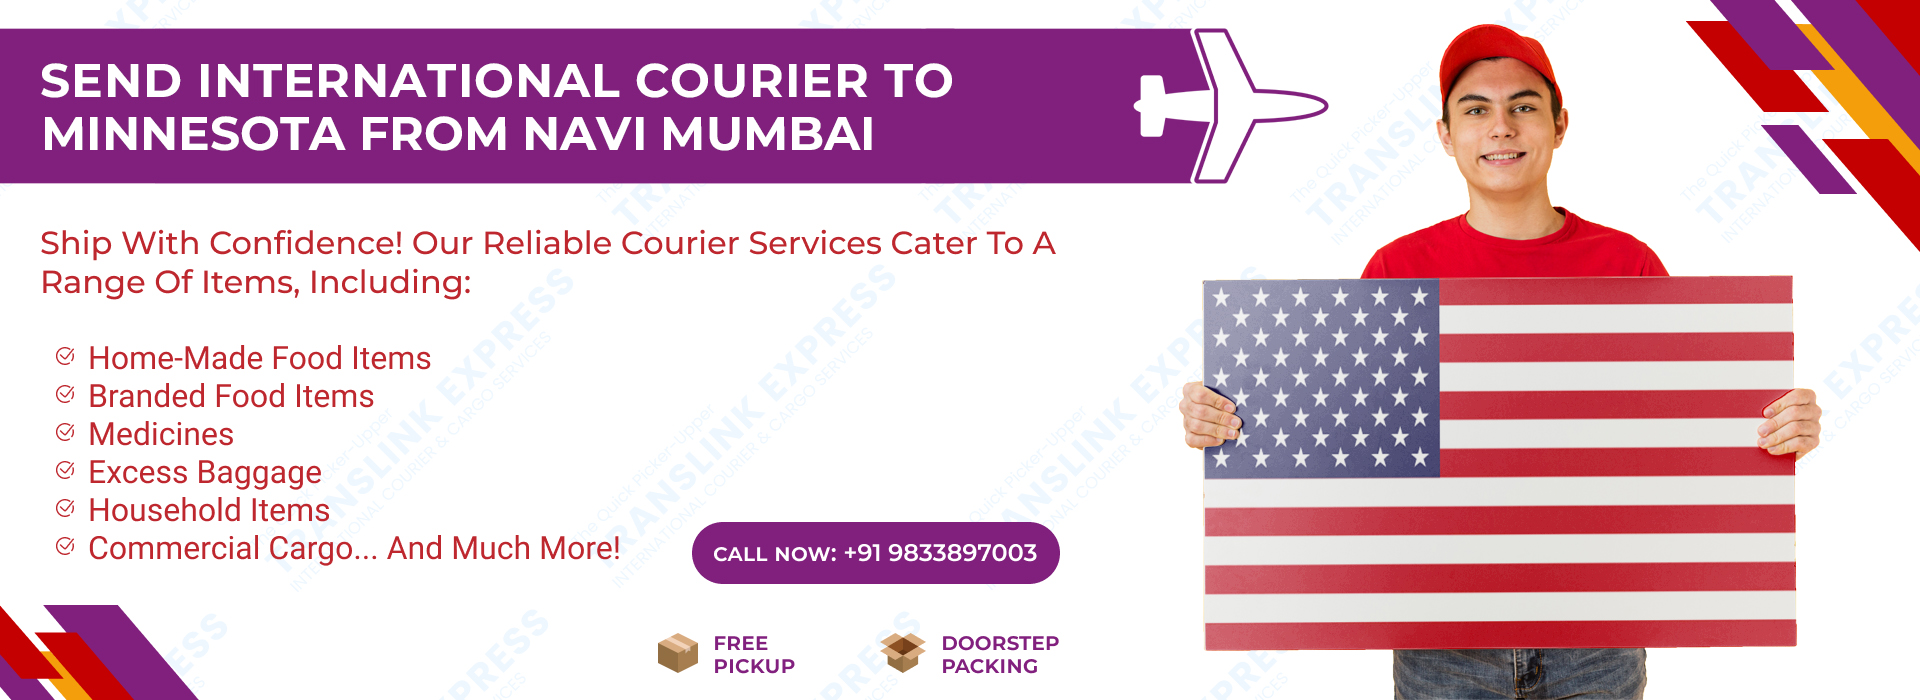 Courier to Minnesota From Navi Mumbai